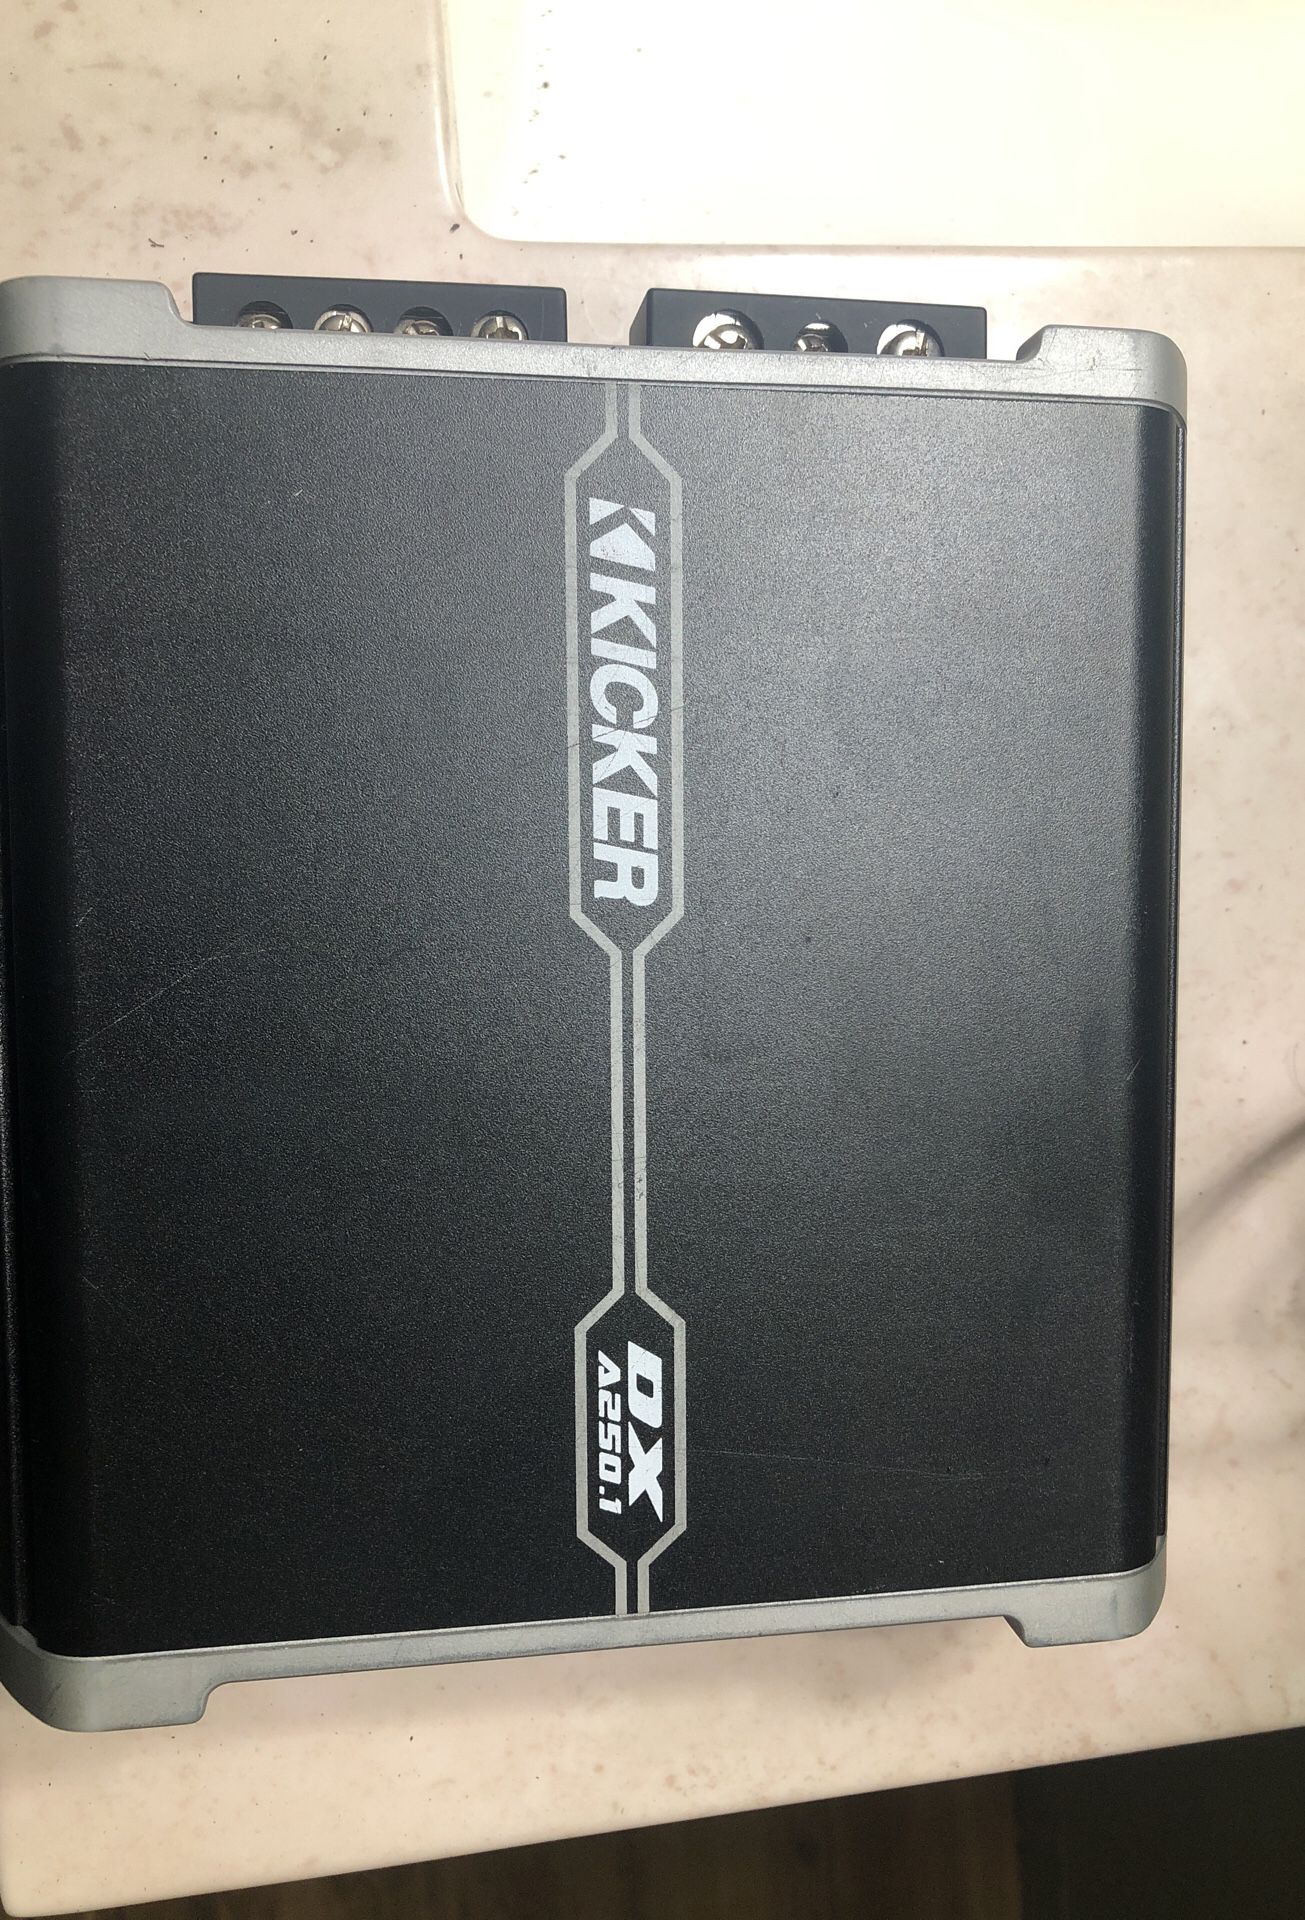 Kicker amplifier